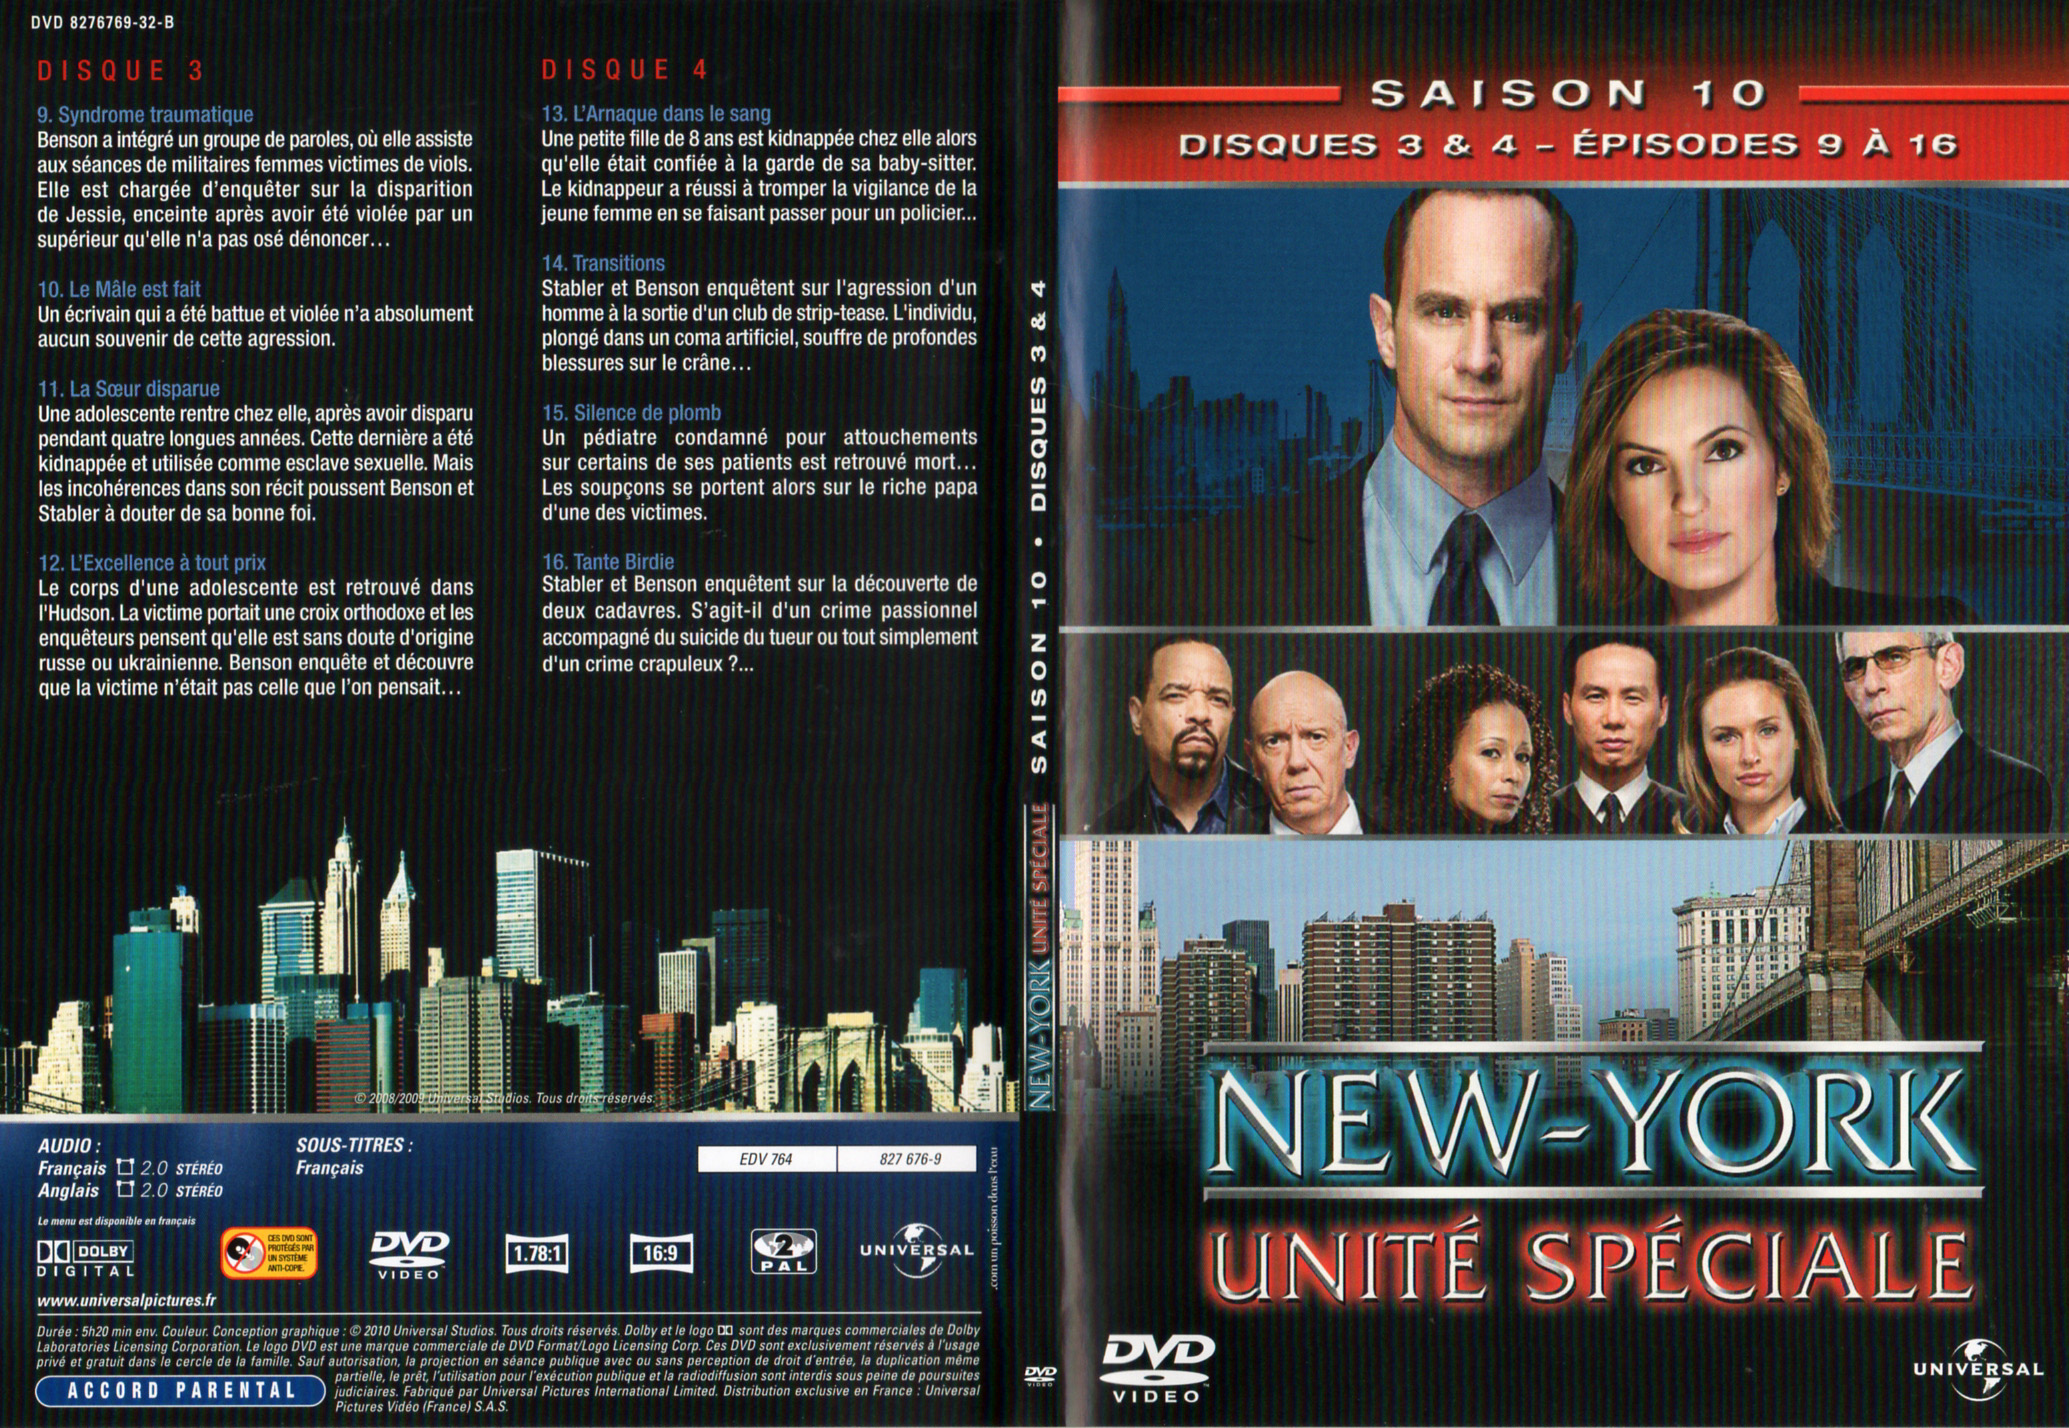 Jaquette DVD New York unit spciale saison 10 DVD 2